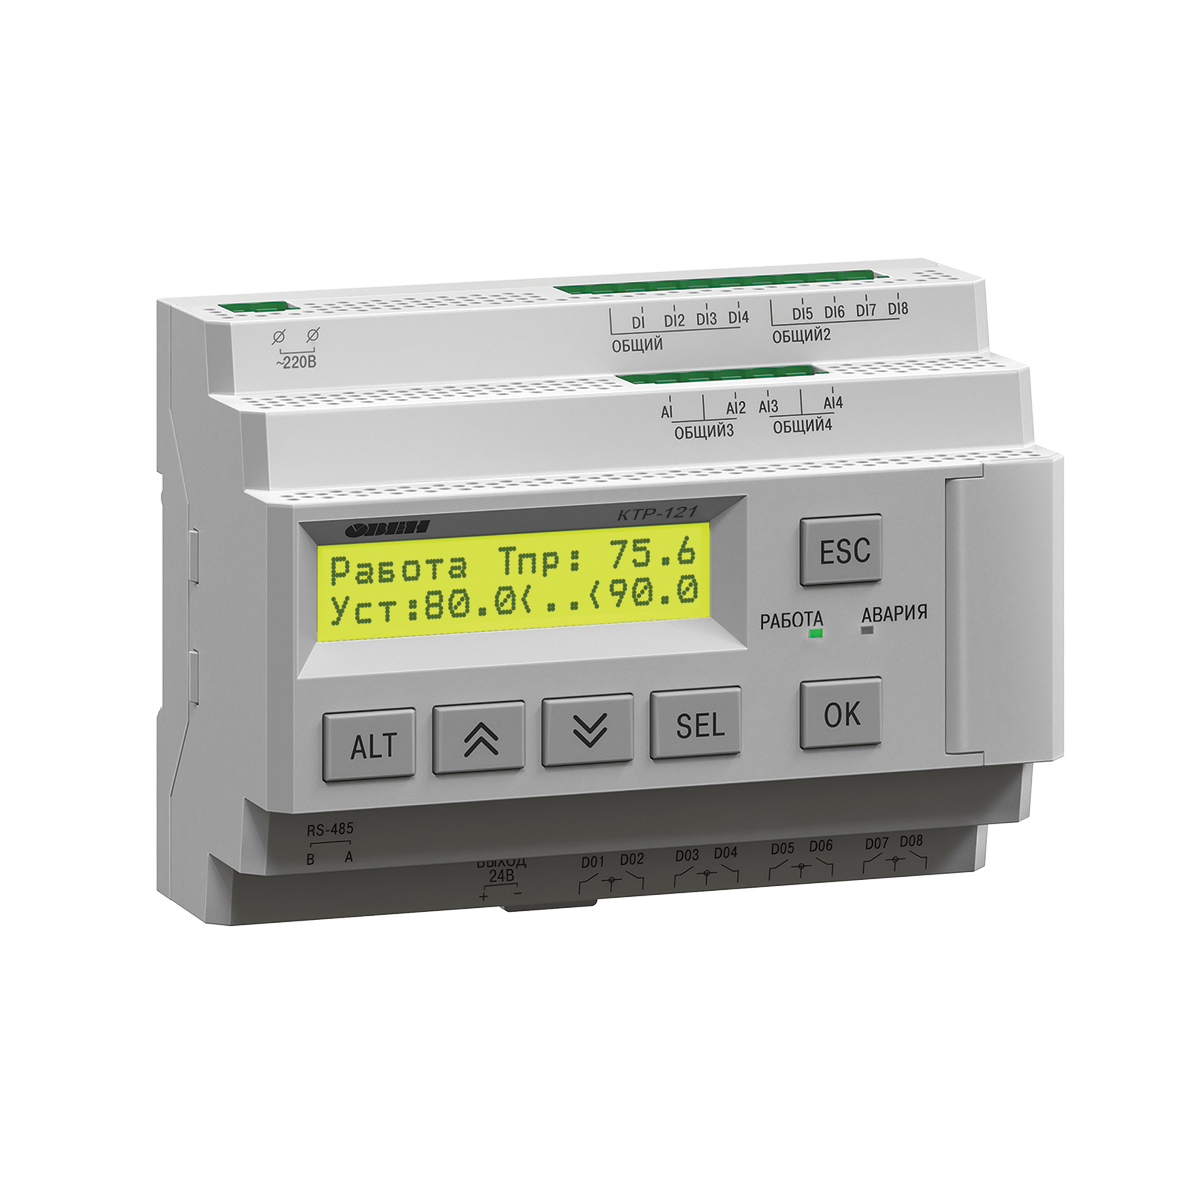 ОВЕН ПЛК304 контроллер для распределенных систем